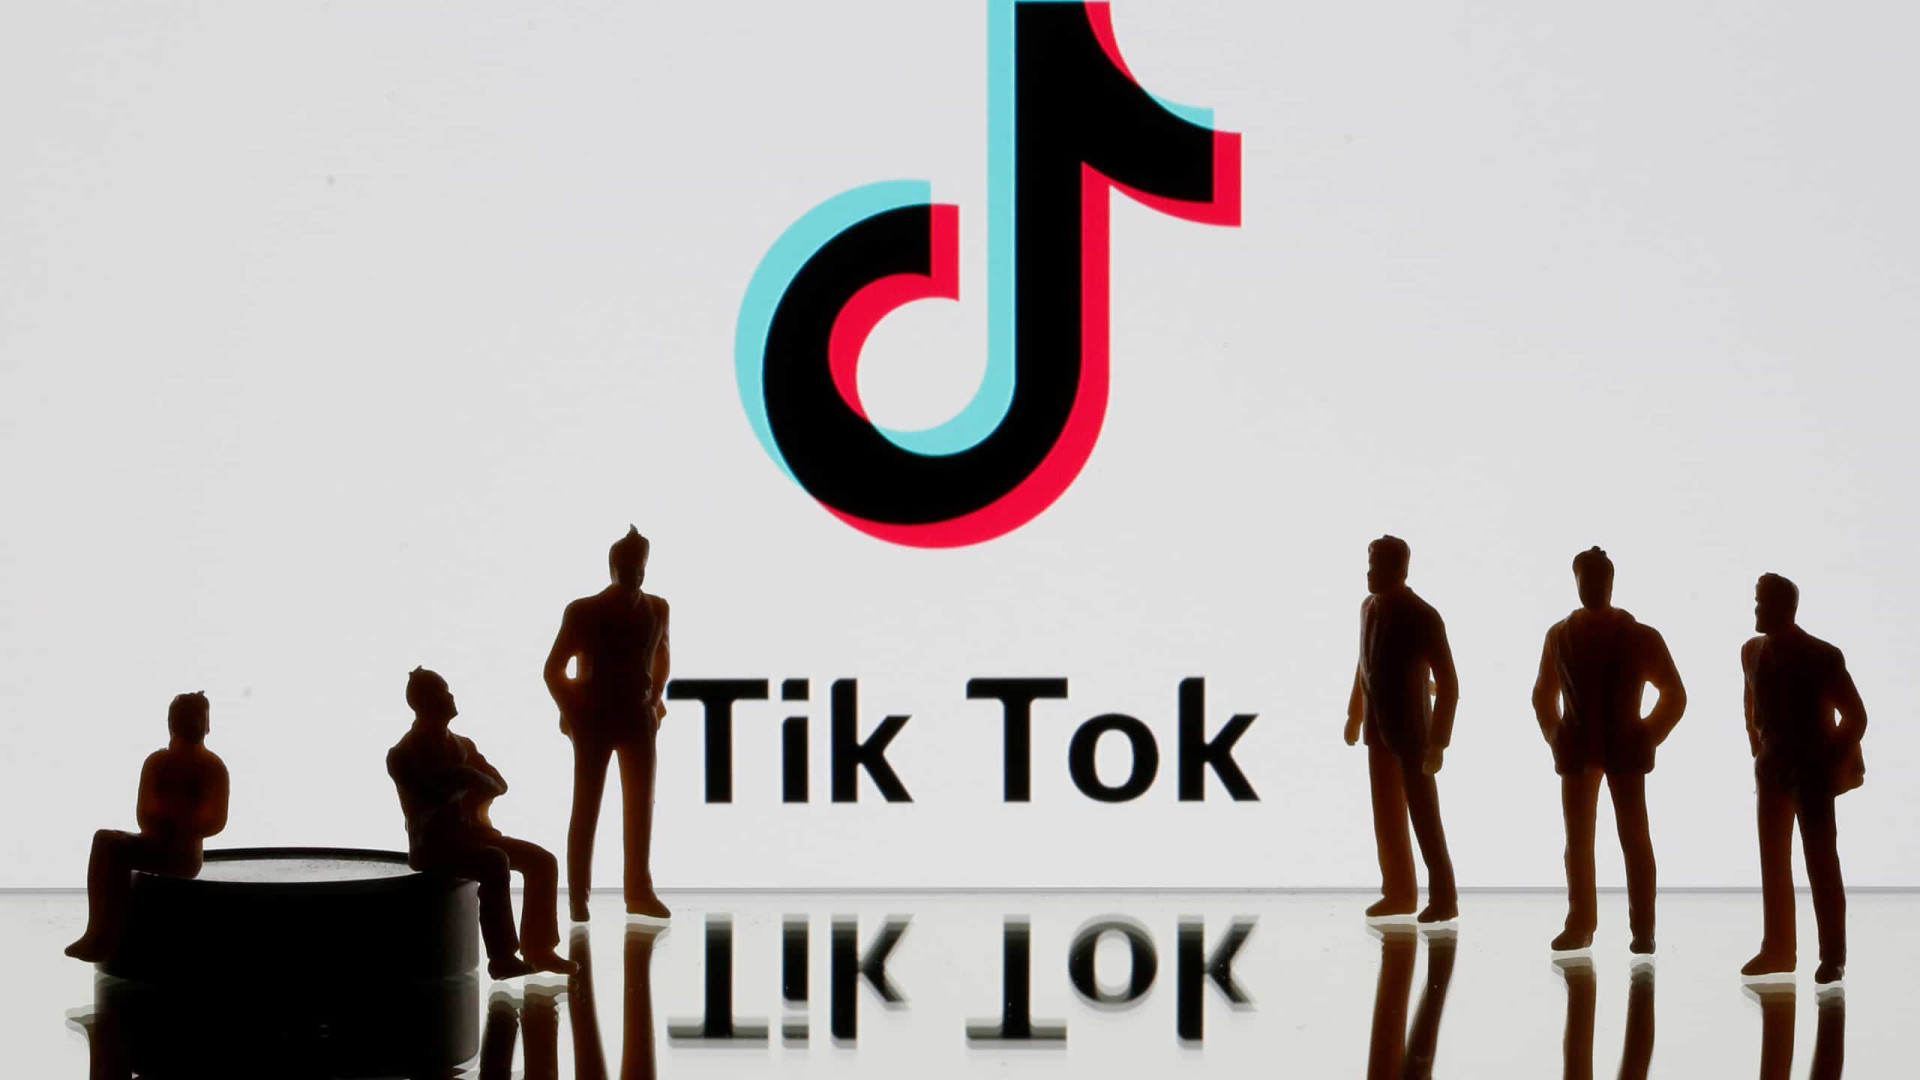 TikTok vai além da dancinha e vira vitrine profissional